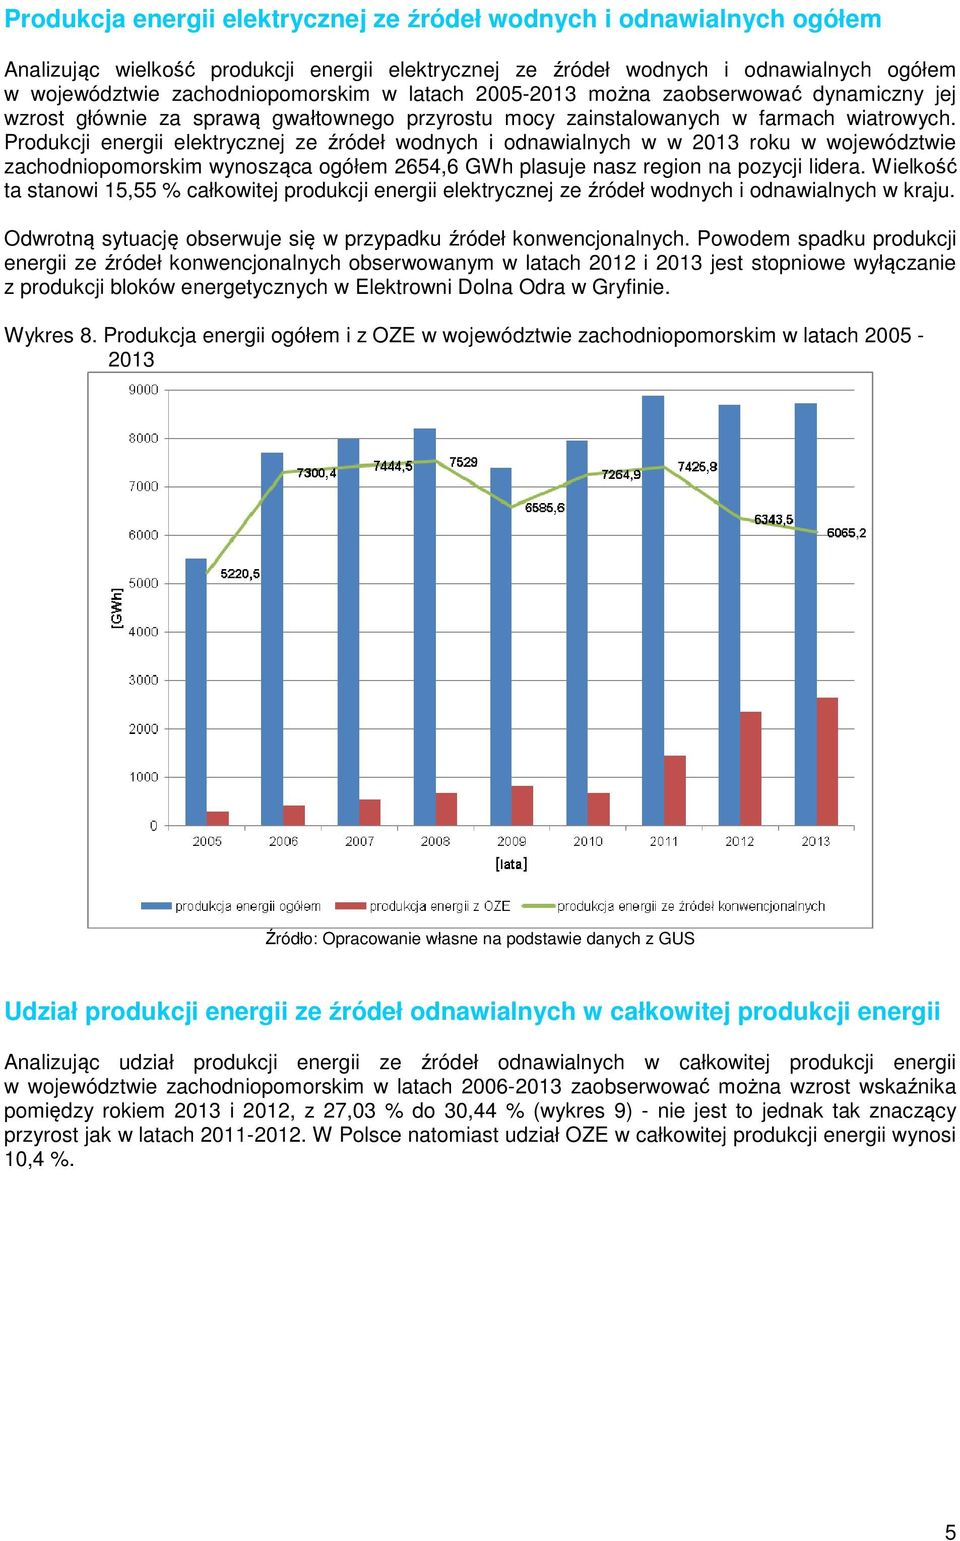 Produkcji energii elektrycznej ze źródeł wodnych i odnawialnych w w 2013 roku w województwie zachodniopomorskim wynosząca ogółem 2654,6 GWh plasuje nasz region na pozycji lidera.